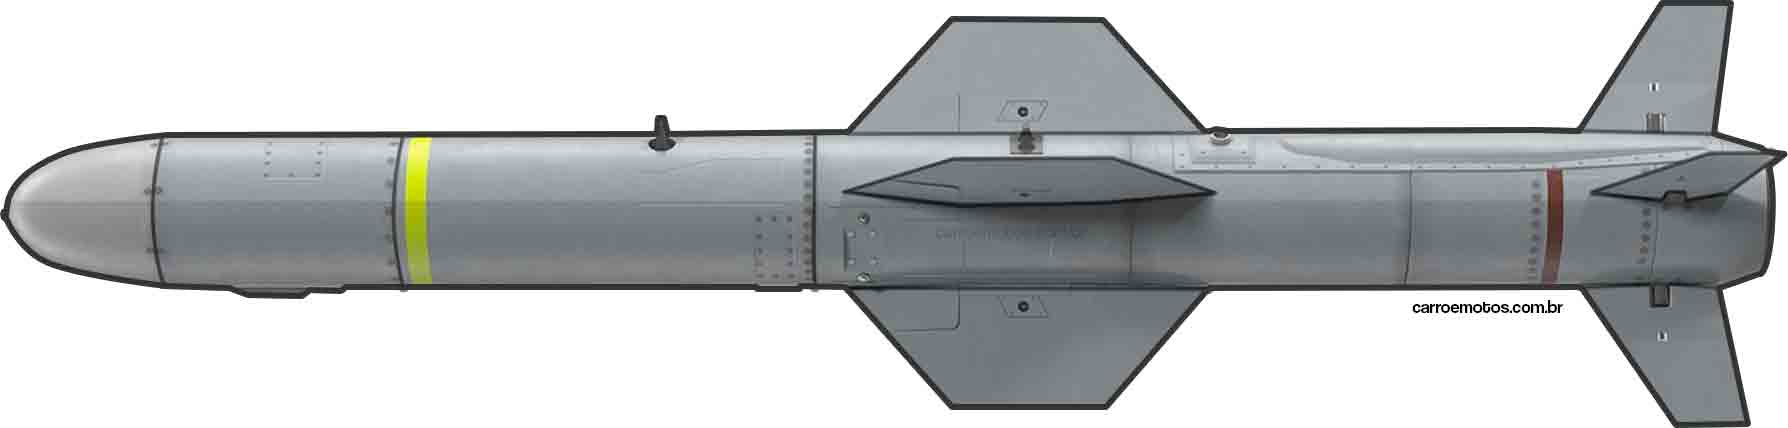 Tên lửa mục tiêu trên mặt nước UGM-84L Harpoon Block II. Hình: Carro e motos